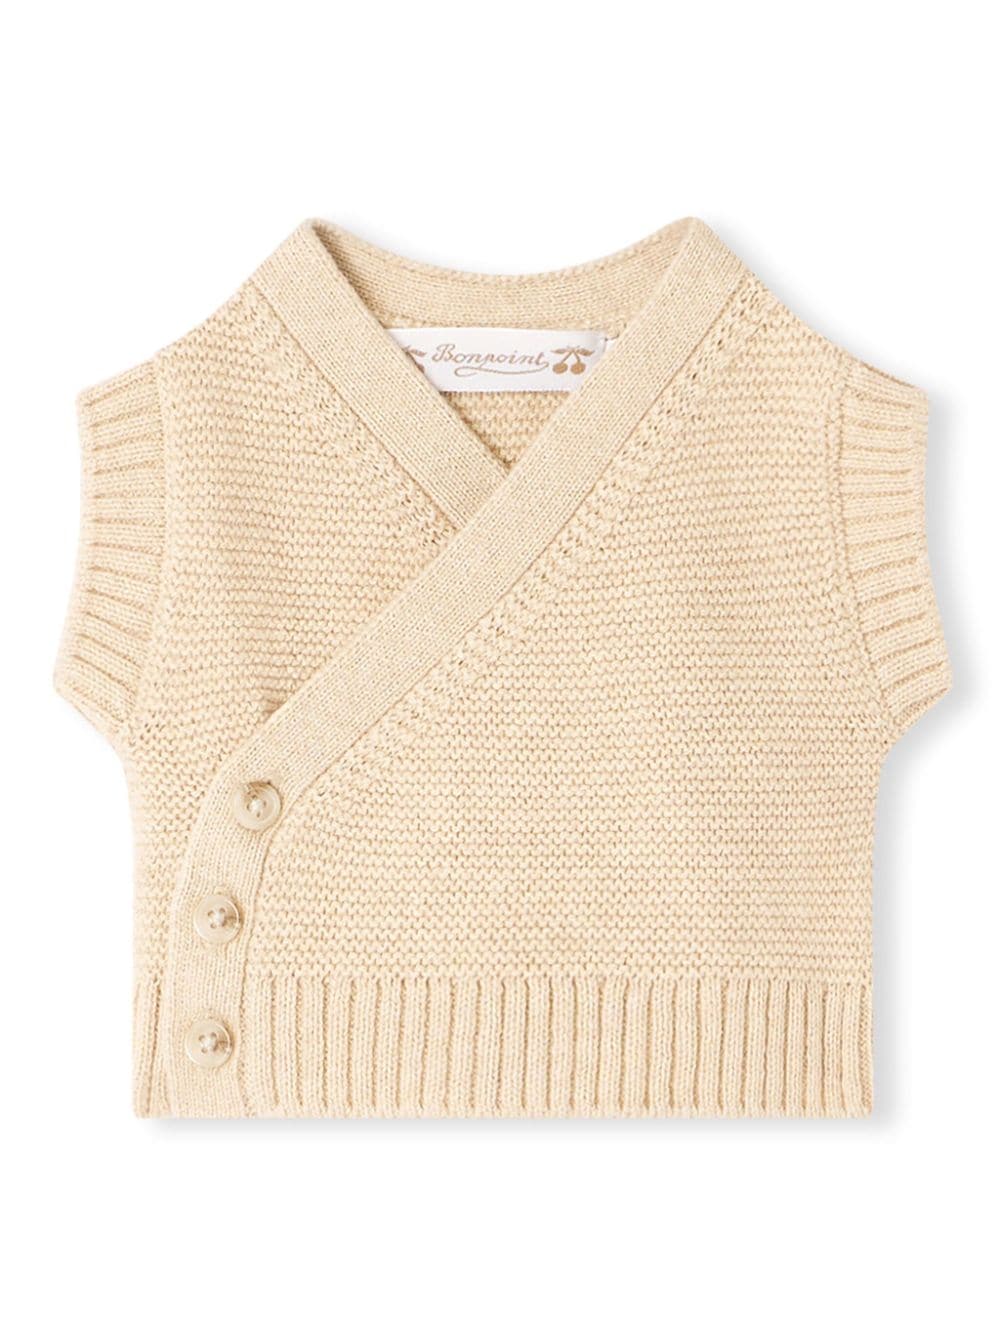 Bonpoint Foe marl-knit babygrow set - Brown von Bonpoint